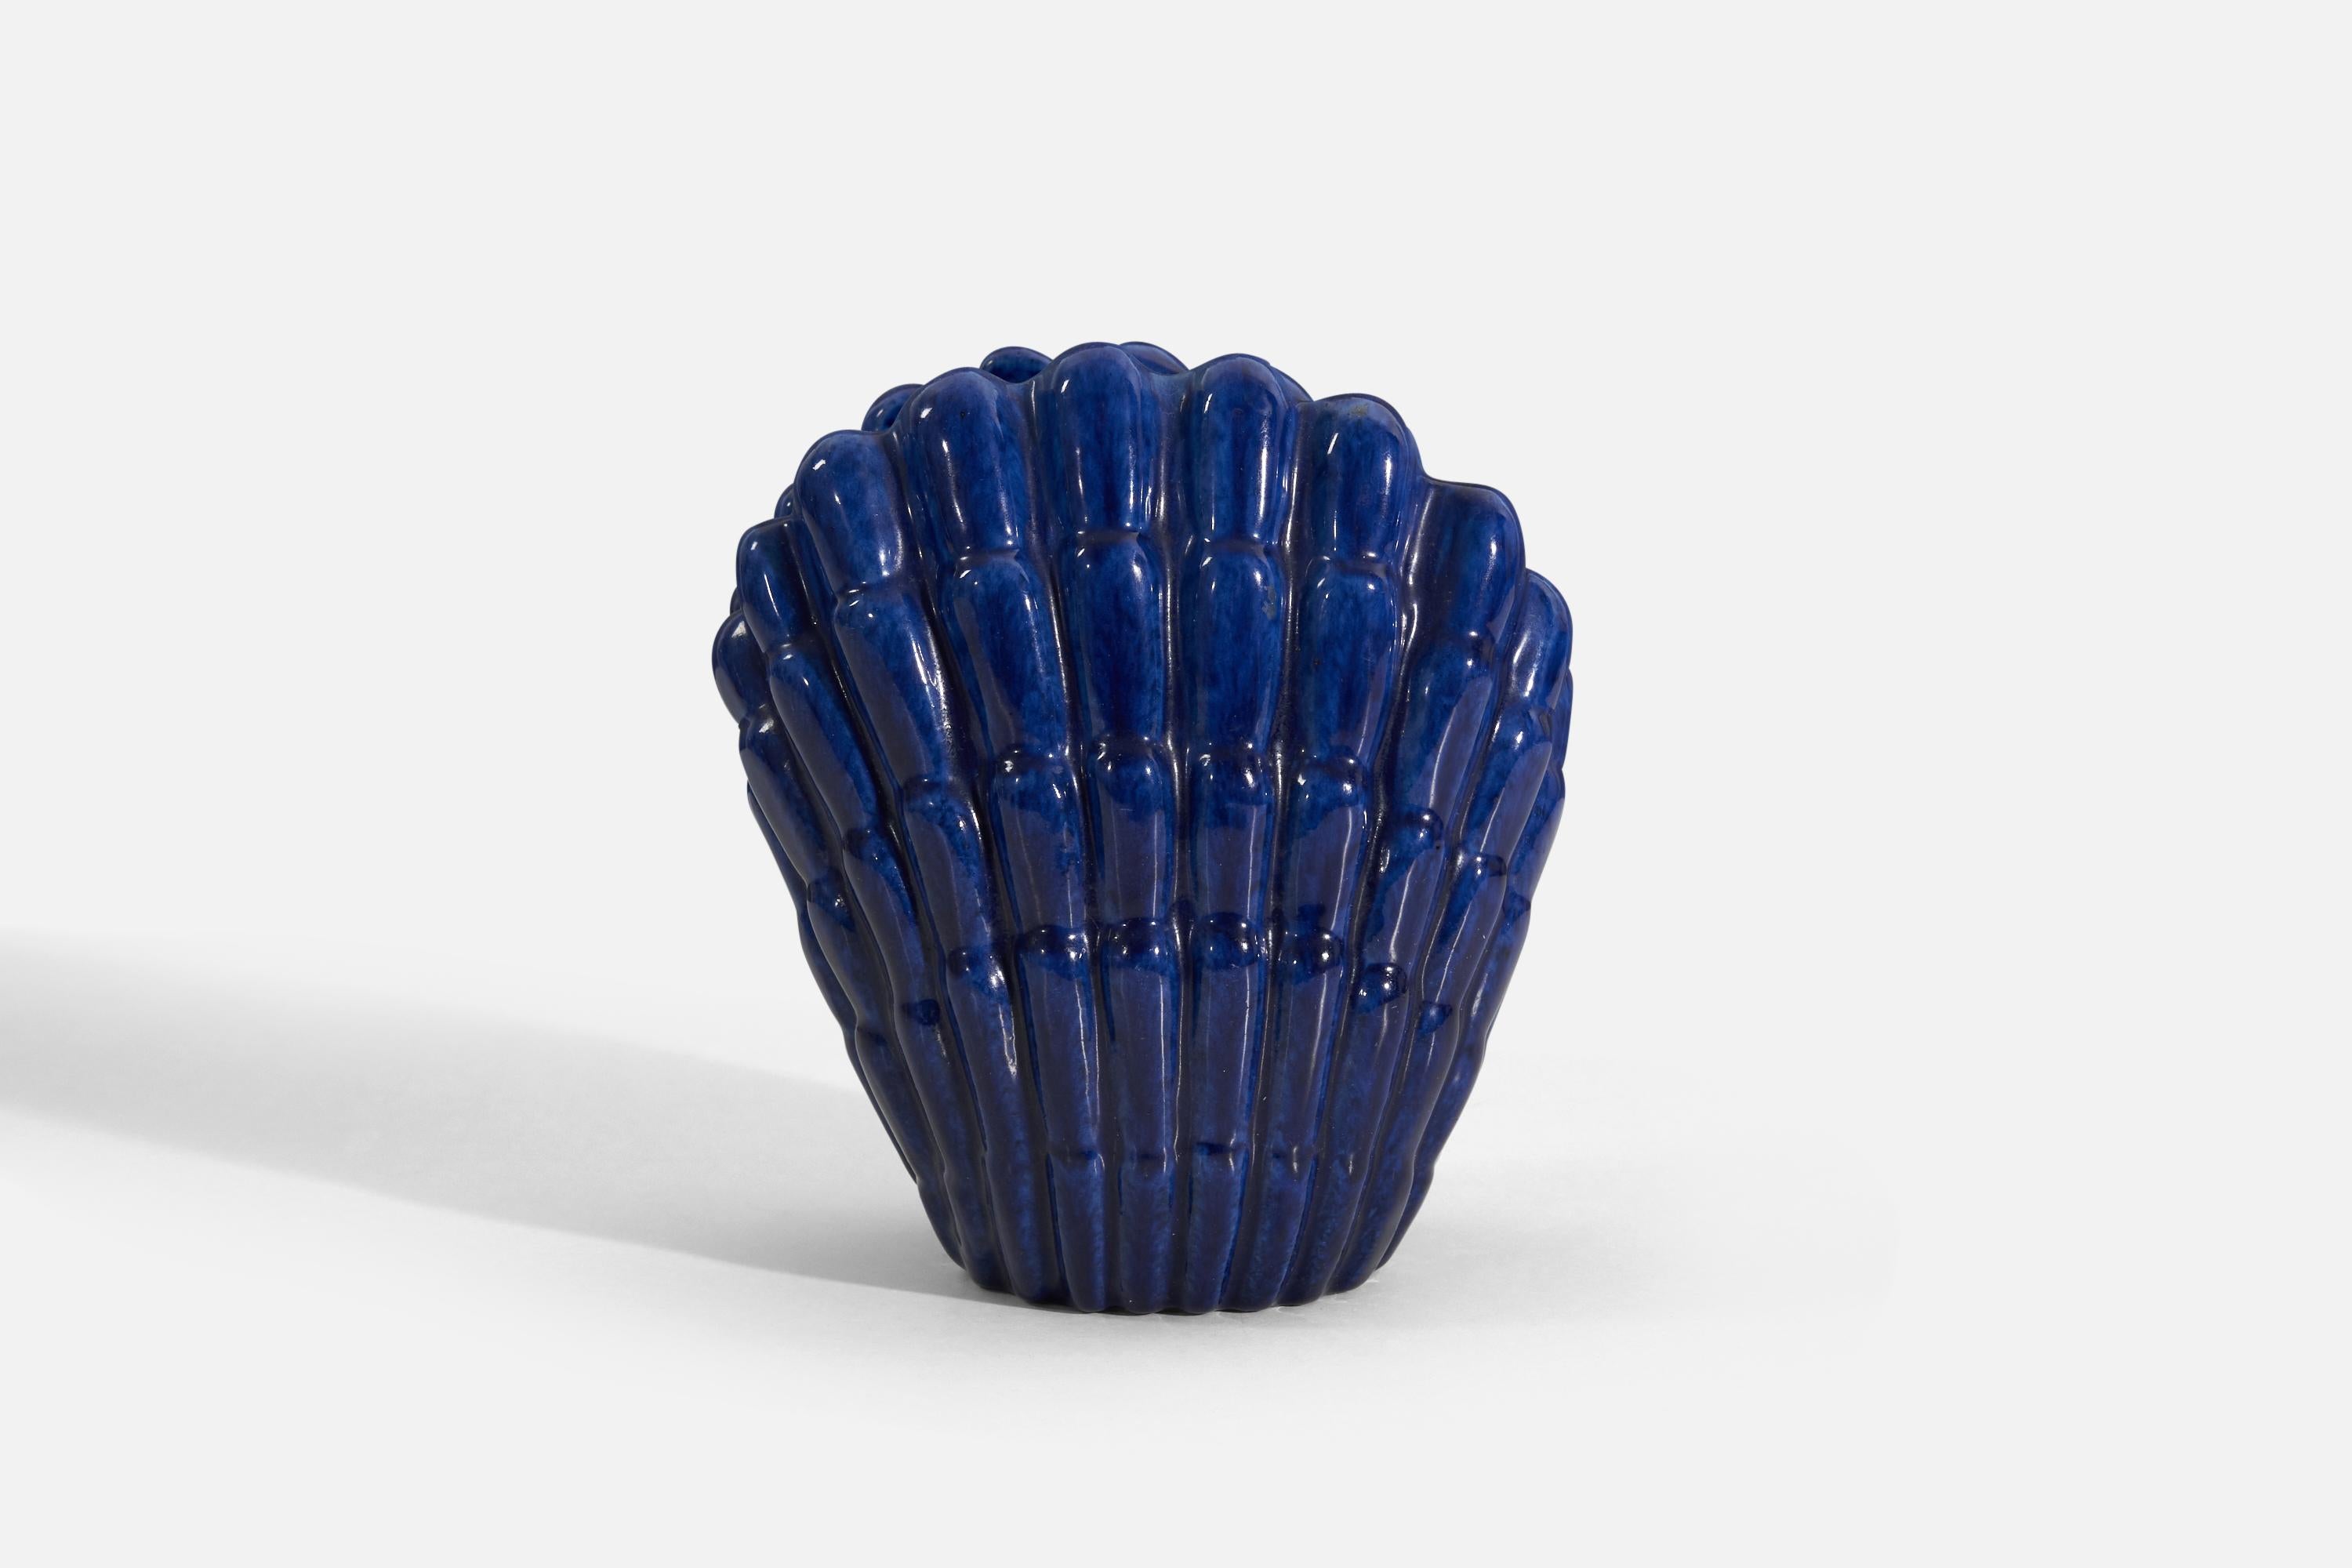 Organic Modern Vicke Lindstrand, Vase, Blue-Glazed Earthenware, Upsala-Ekeby, Sweden, 1940s For Sale